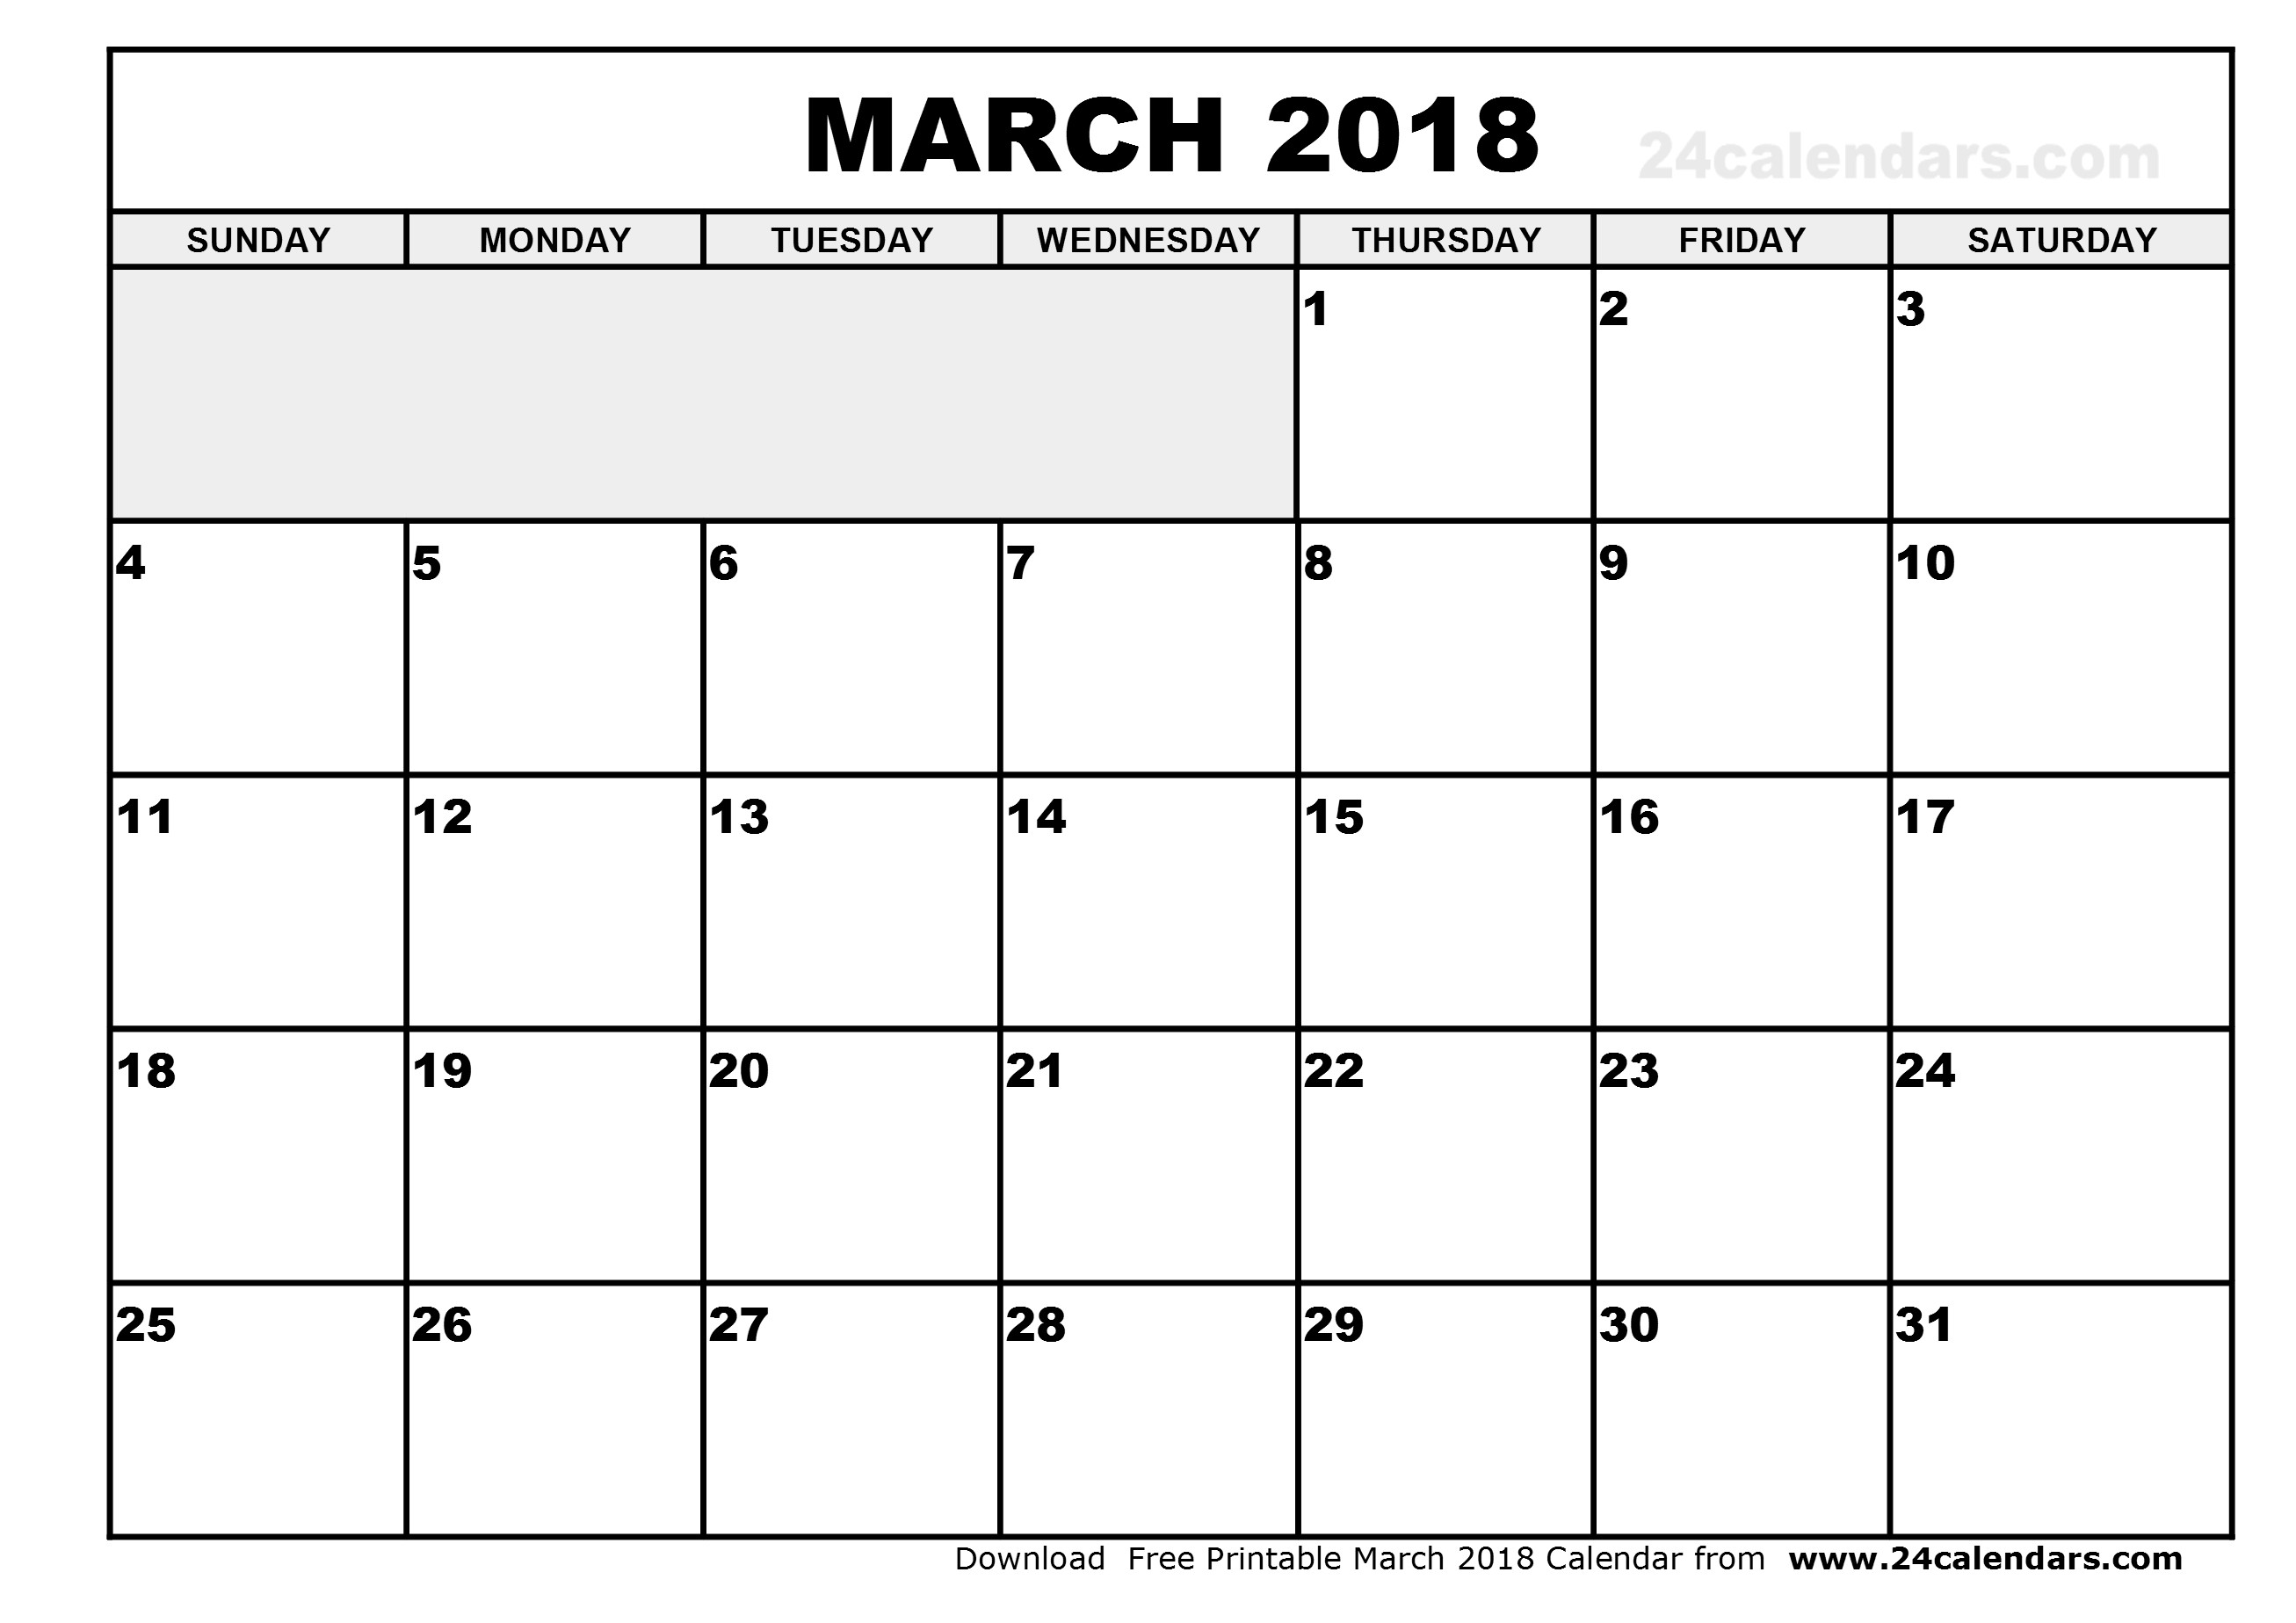 march-2018-calendar-march-2018-calendar-printable